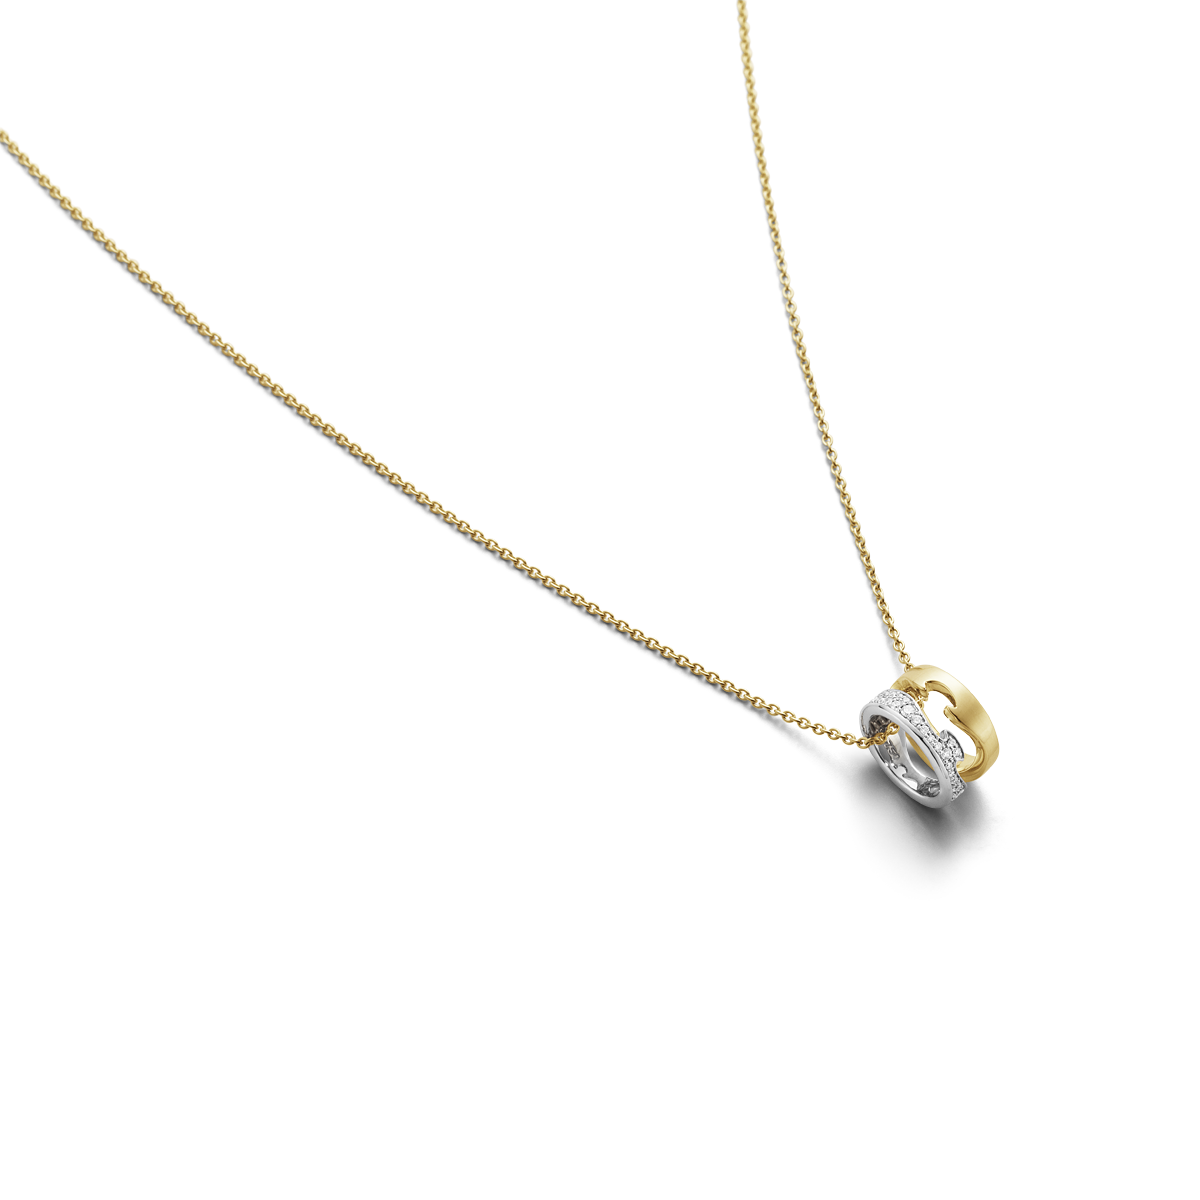 Fusion halskæde med vedhæng, diamanter - hvidguld, guld fra Georg Jensen